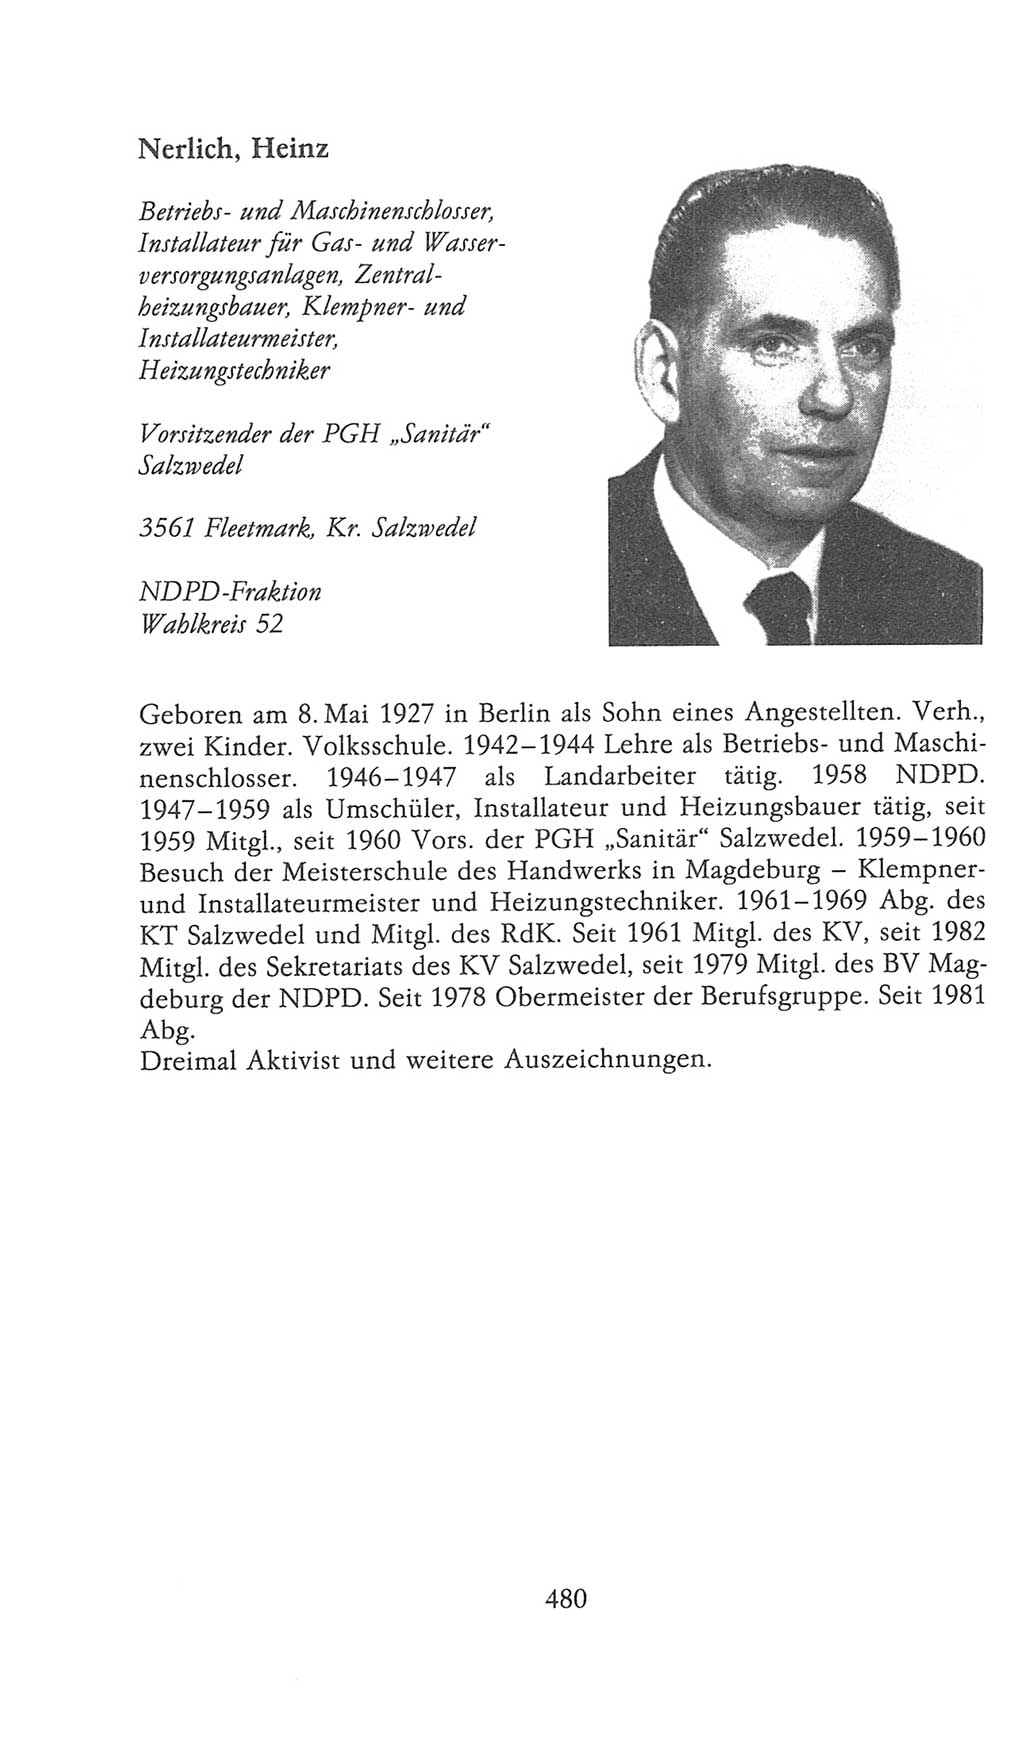 Volkskammer (VK) der Deutschen Demokratischen Republik (DDR), 9. Wahlperiode 1986-1990, Seite 480 (VK. DDR 9. WP. 1986-1990, S. 480)